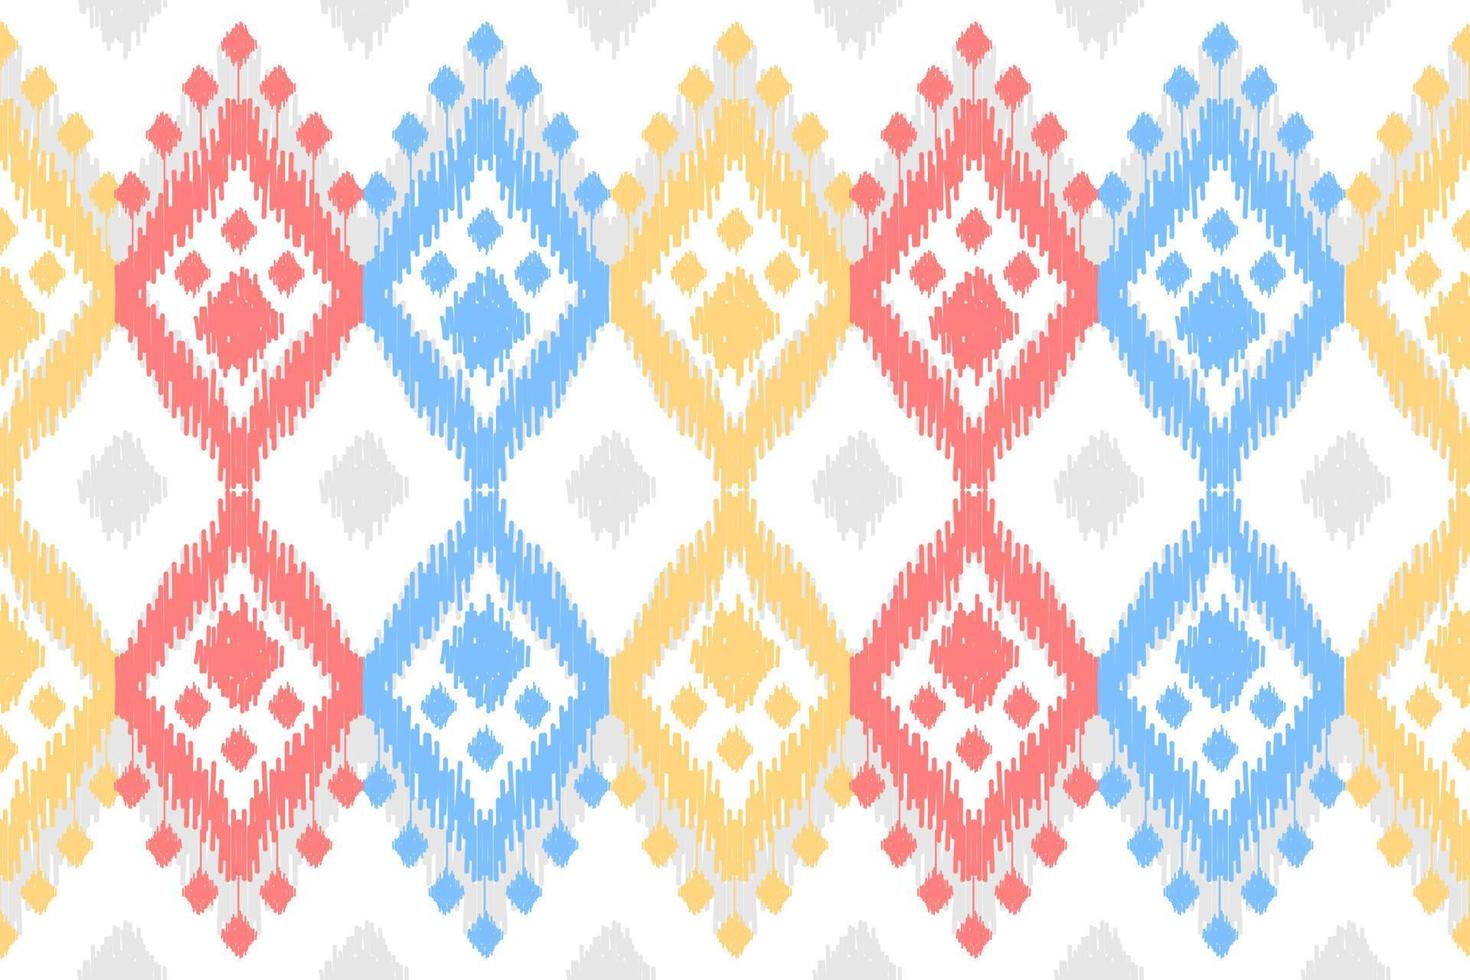 patrón de tela ikat art. patrón geométrico étnico sin fisuras tradicional. estilo americano, mexicano. vector